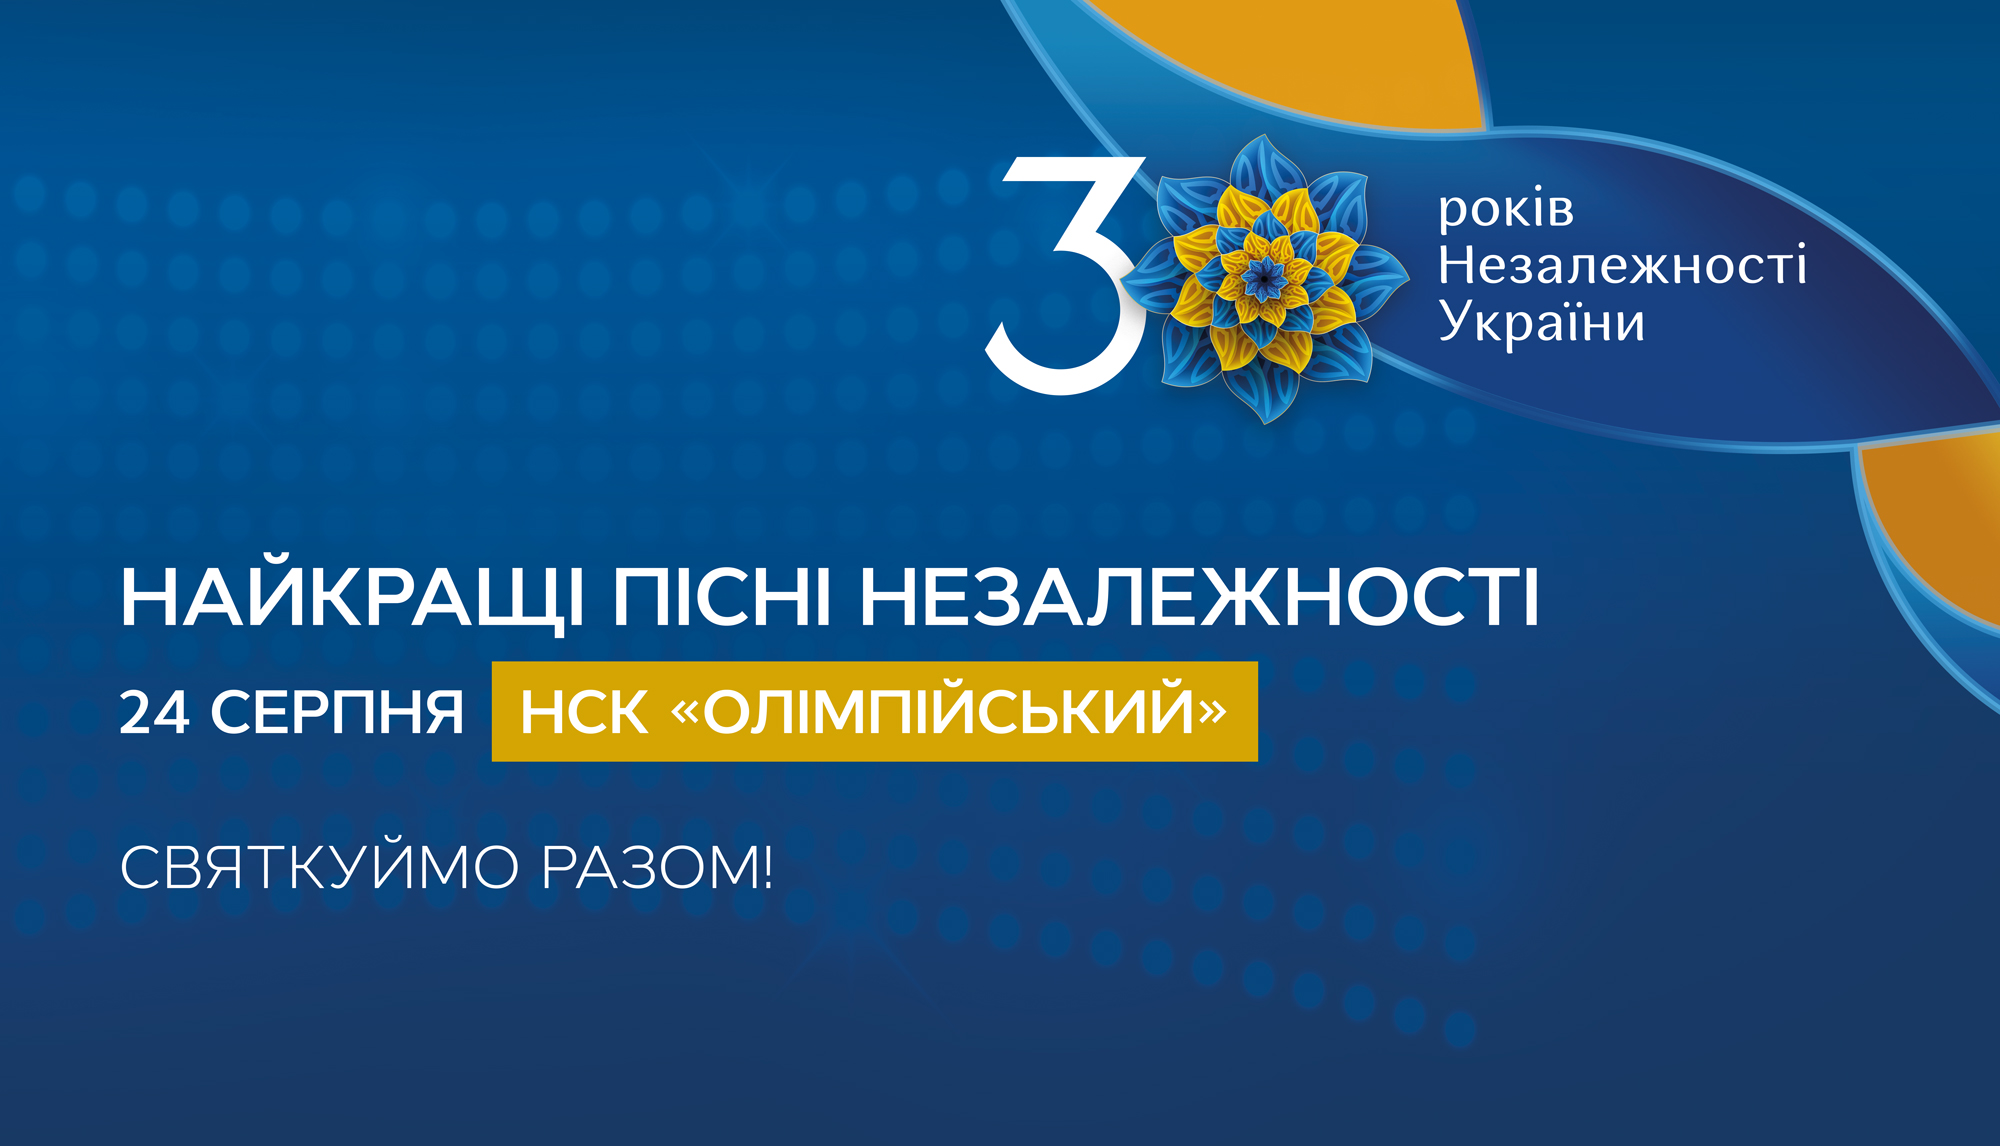 Держава анонсувала урочисте свято на честь 30-річчя Незалежності України. Незалежність і музика в нашій ДНК